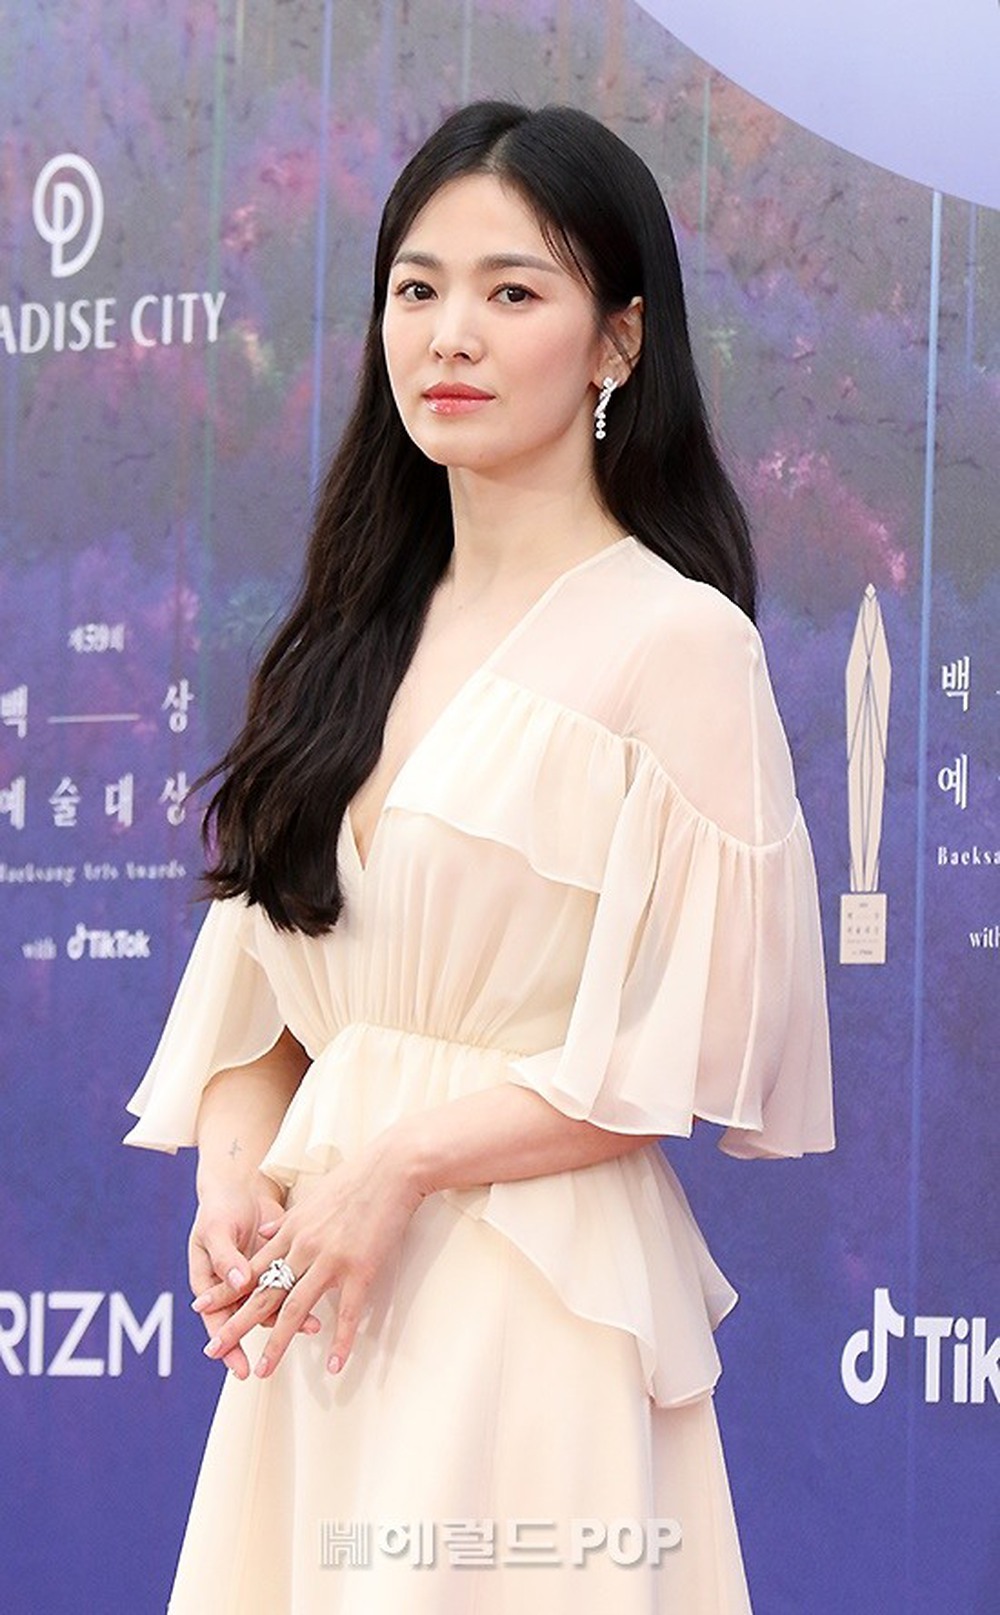 Thảm đỏ Baeksang lần thứ 59: Song Hye Kyo khoe nhan sắc chuẩn nữ thần, hội ngộ tình cũ Lee Byung Hun - Ảnh 1.